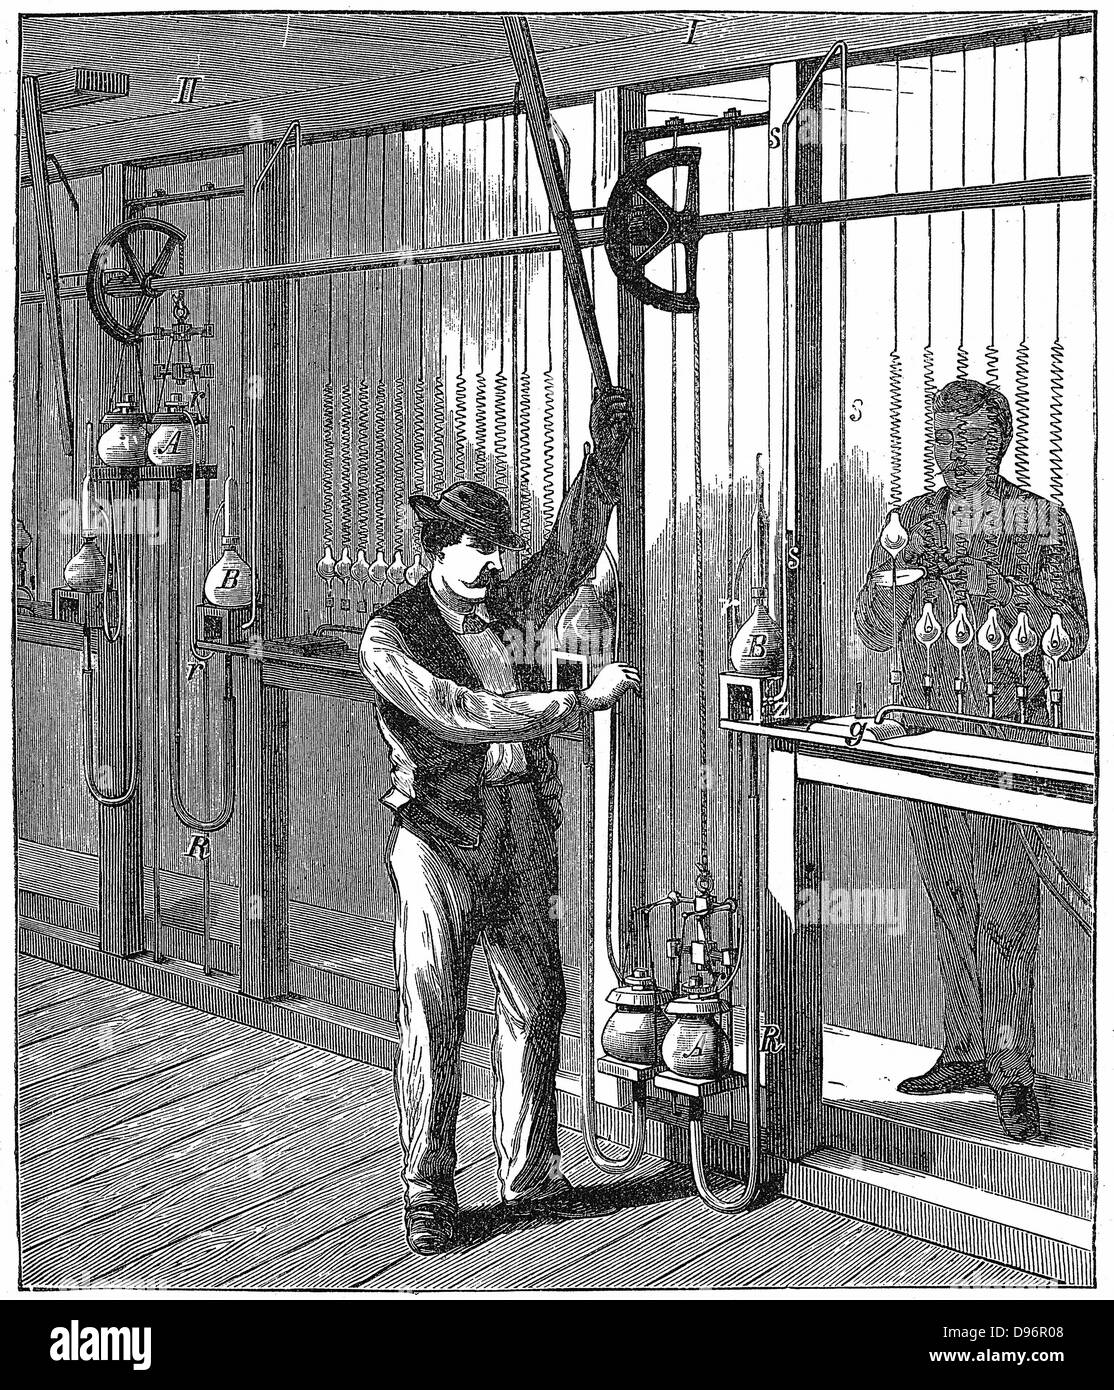 Il mercurio pompa da vuoto essendo utilizzate per evacuare (scarico) lampadine su scala commerciale c1883. La pompa è qui Geissler è modificata da Topler ed era del tipo utilizzato dal Swan Company. Da R. Wormell "l'elettricità al servizio dell'uomo" Londra 1896. Incisione Foto Stock